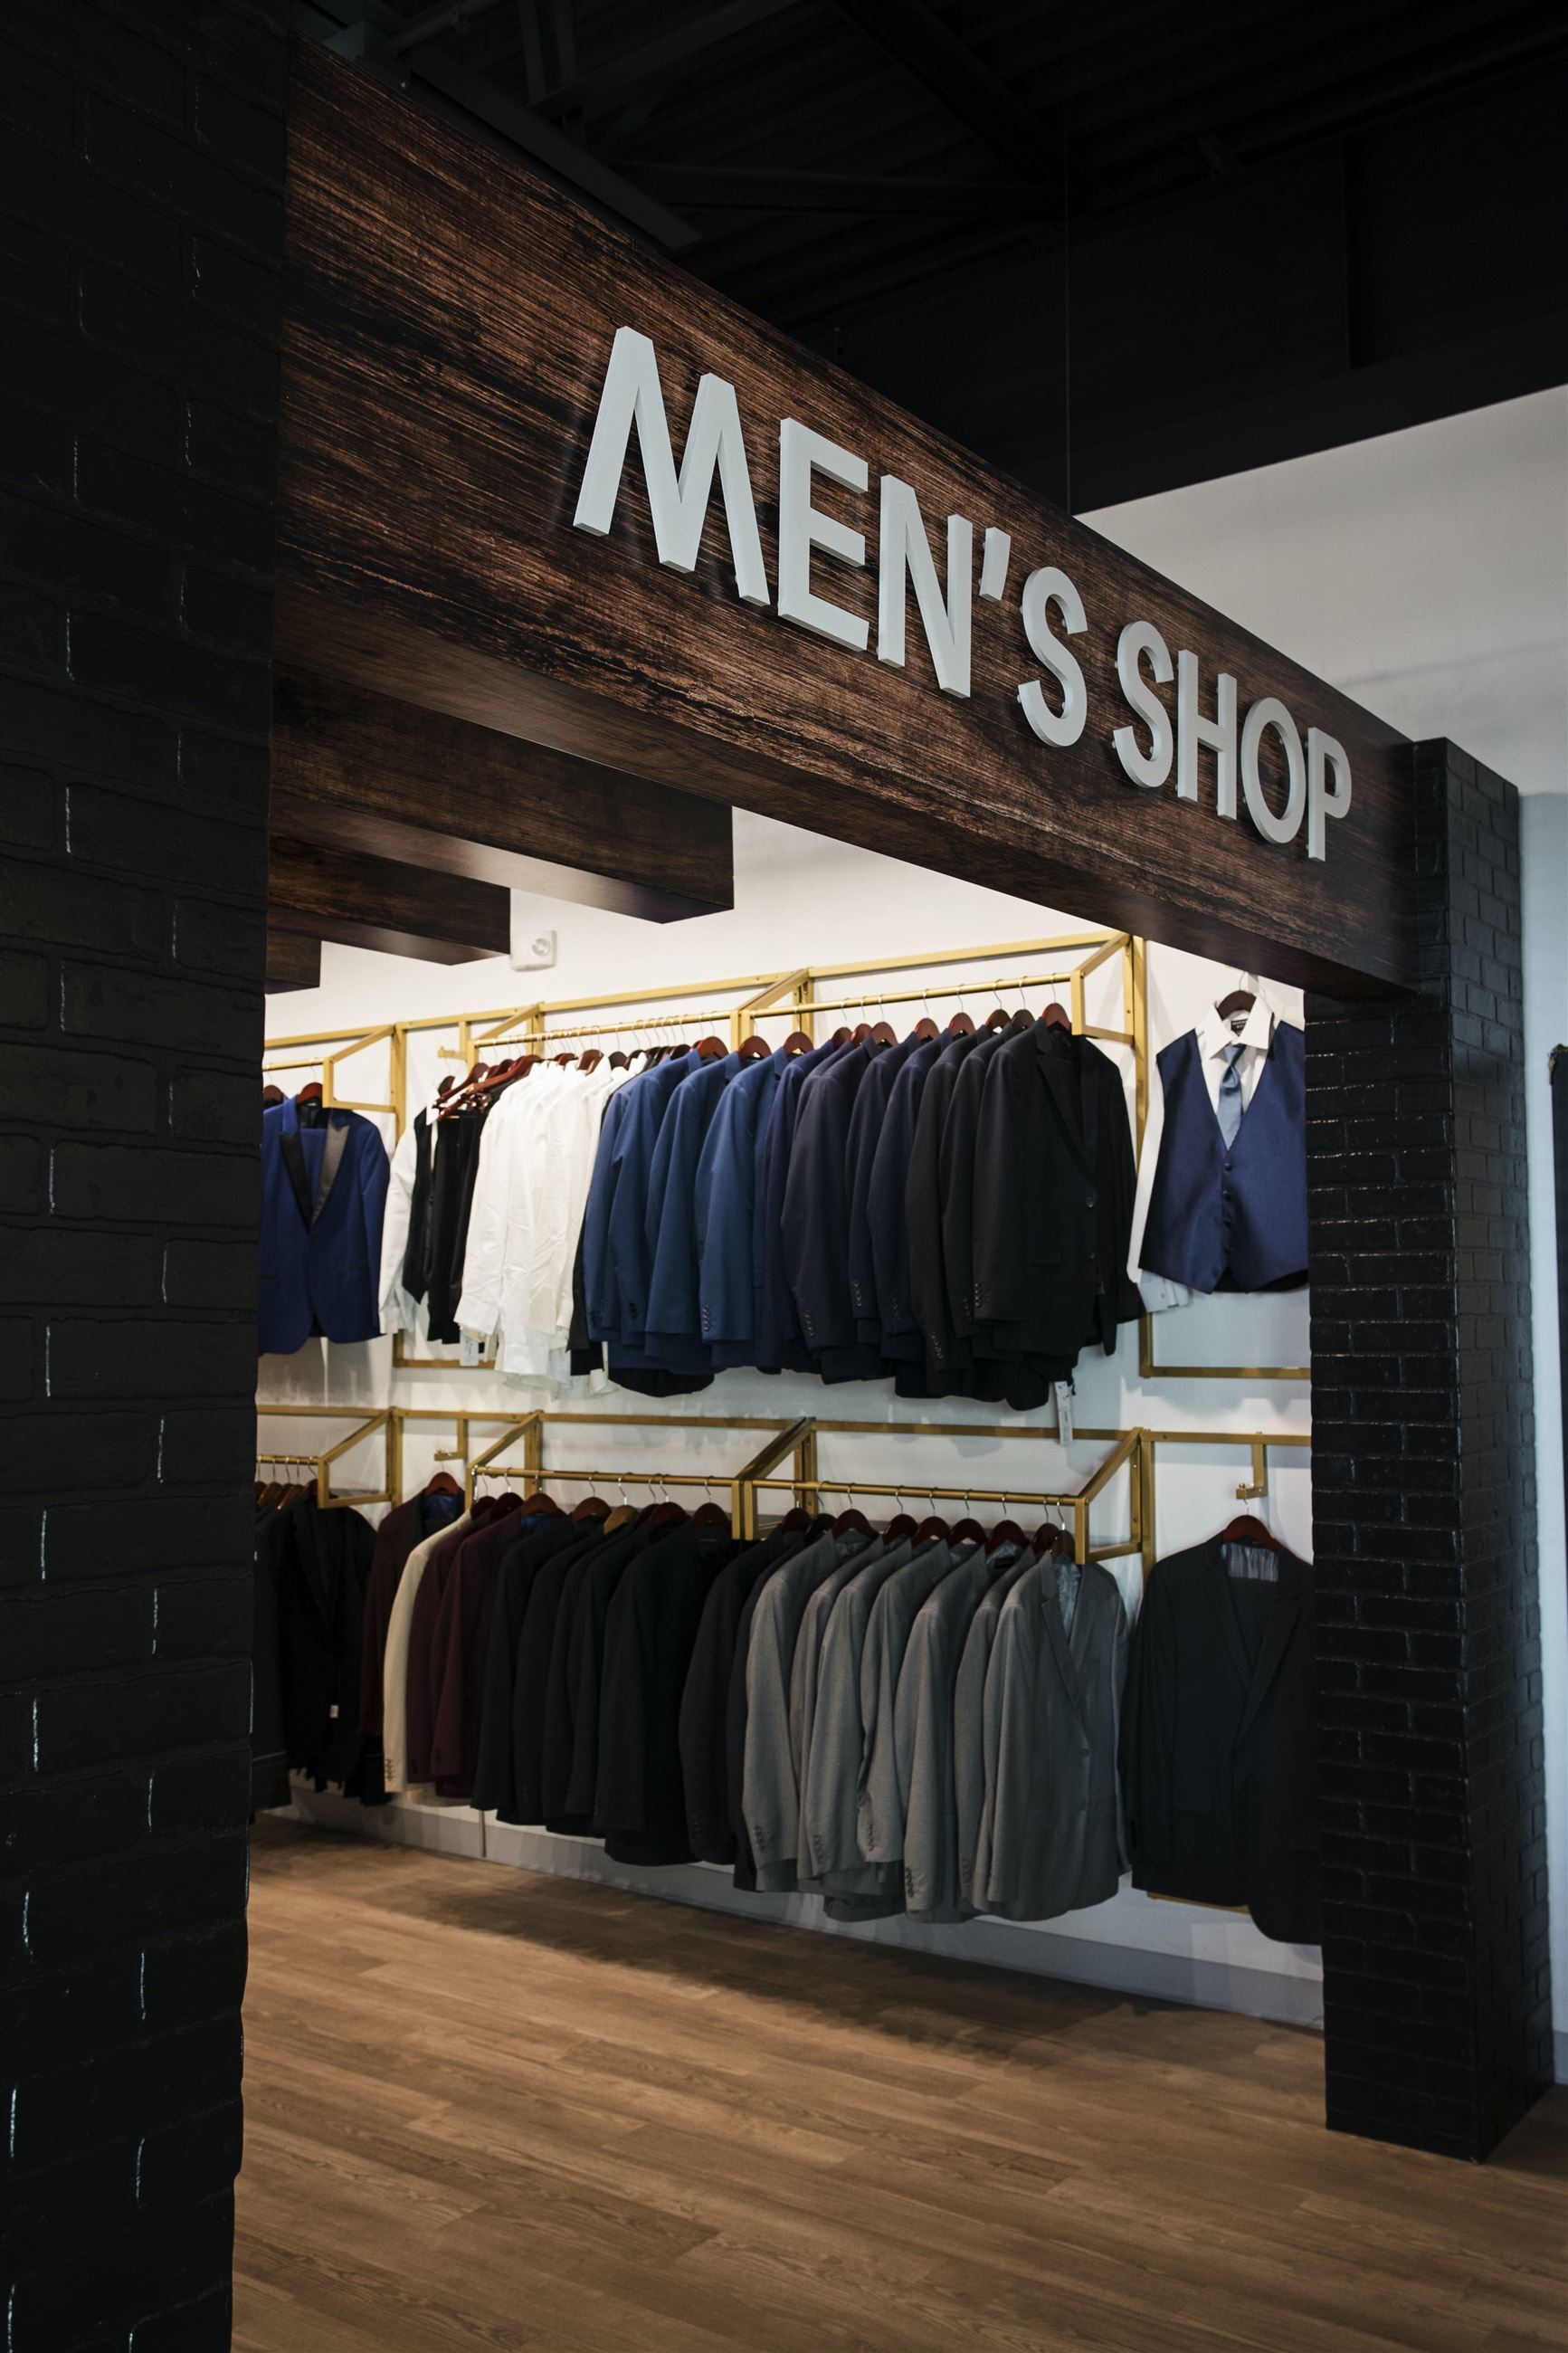 Men's shop